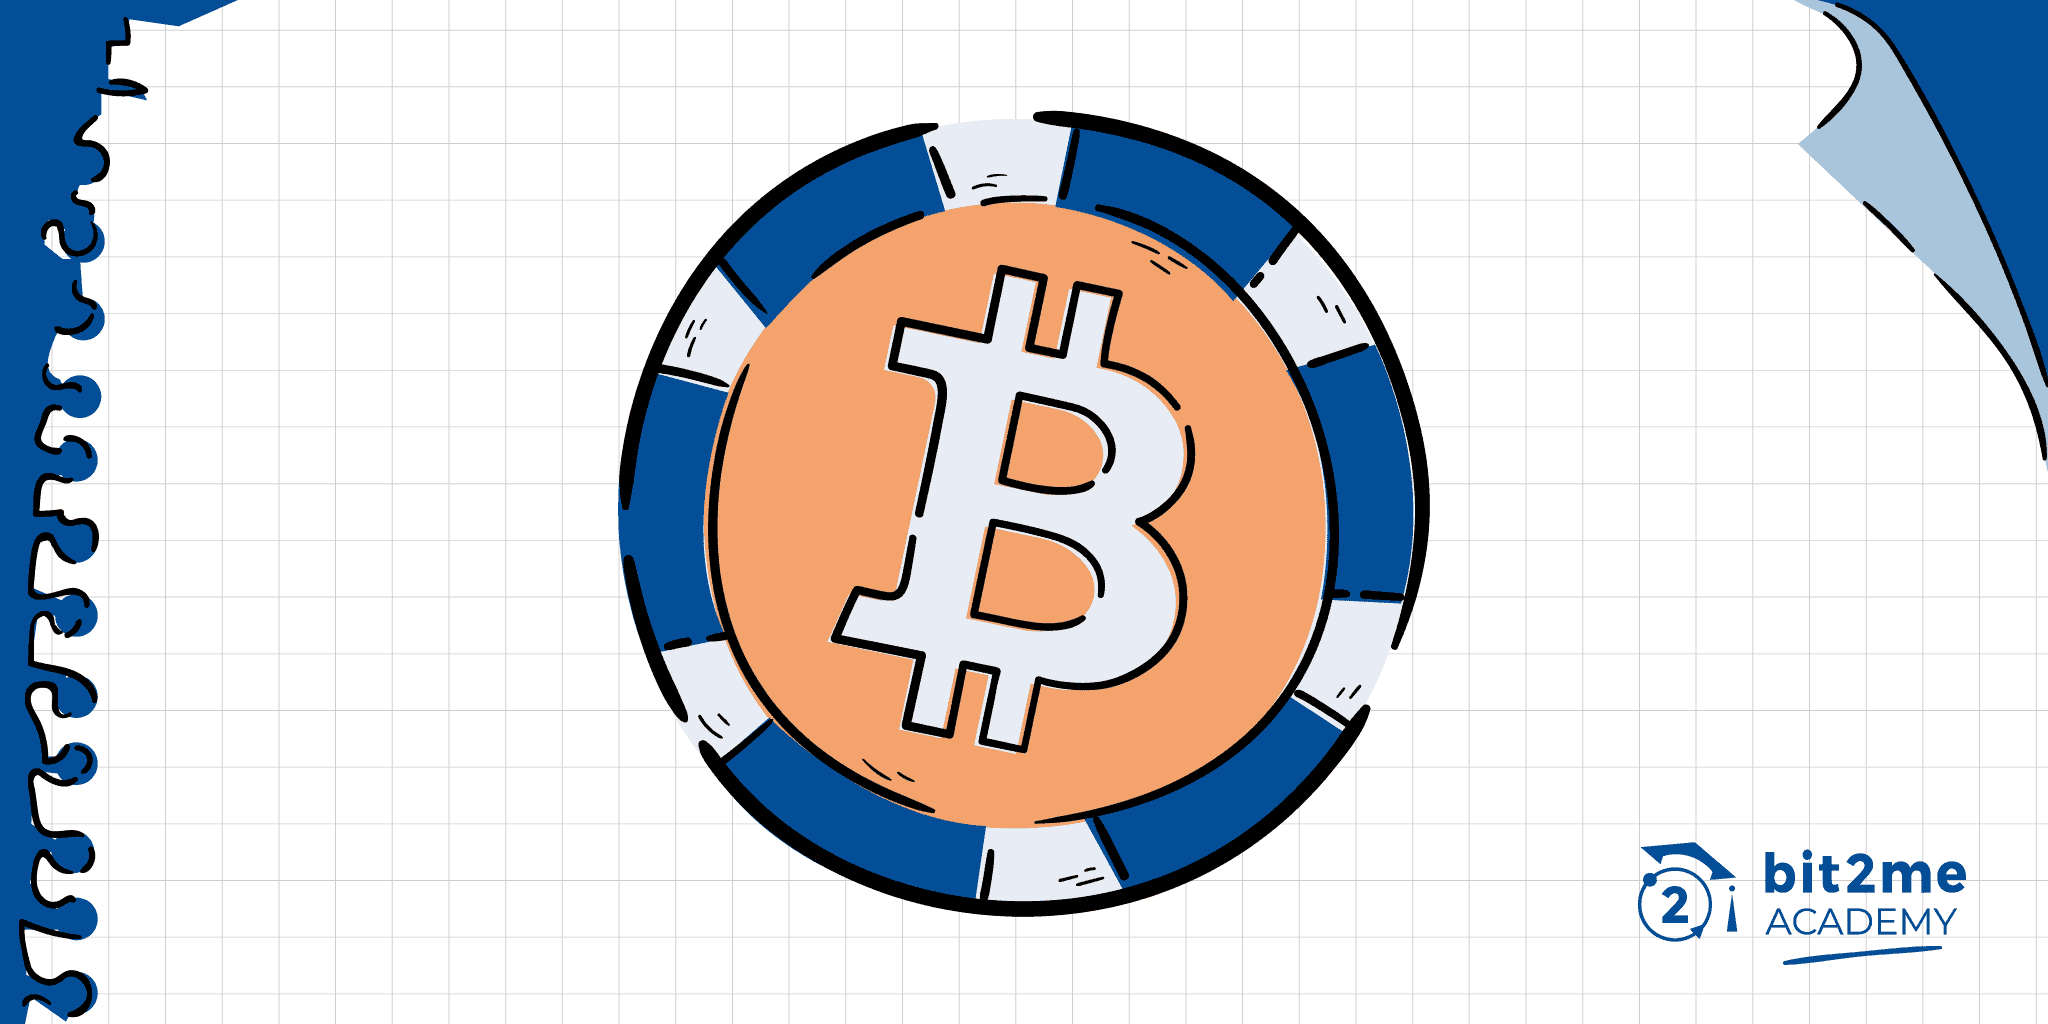 que es colored coin, que es colored coin bitcoin, colored coin, colored coin bitcoin, token bitcoin, colored coin token, colored bitcoin